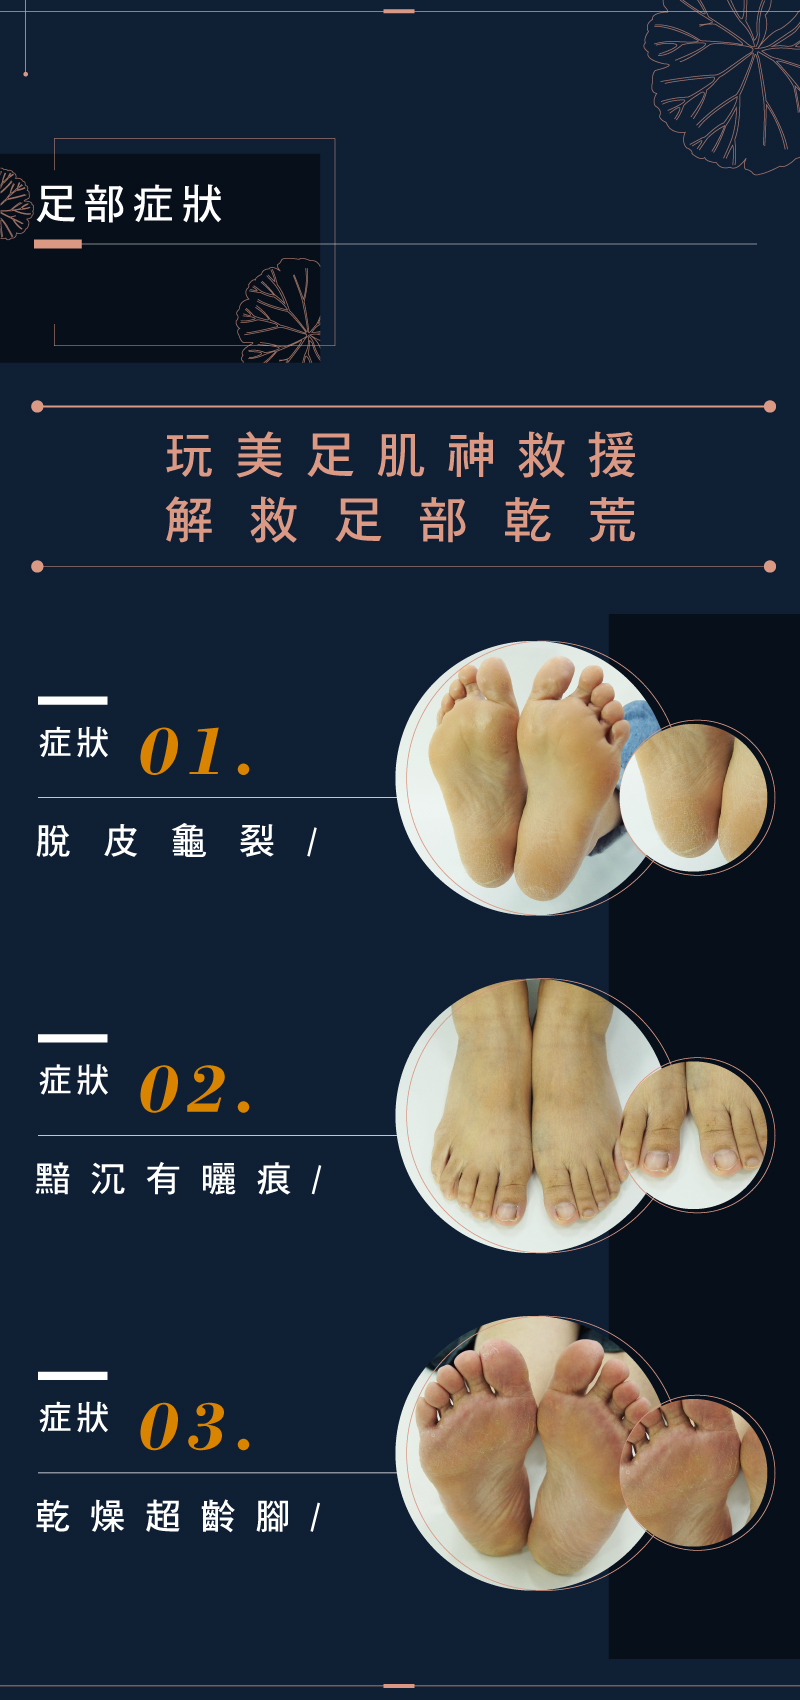 保濕足膜 玩美足肌 積雪草潤白水感足膜 腳膜 Footer 除臭襪 機能性纖維產品 台灣官方網站